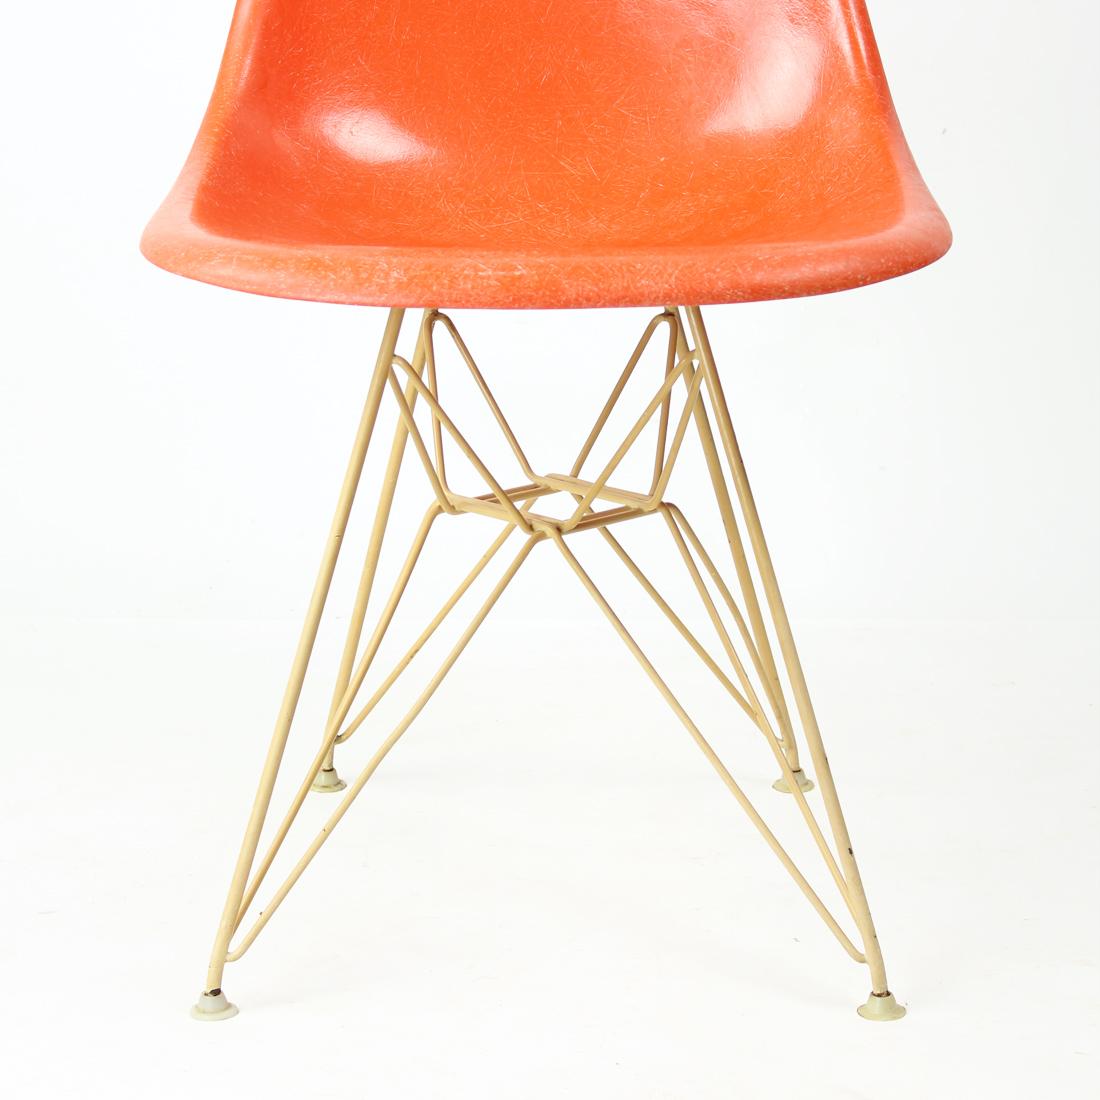 Chaise originale des années 1960 en fibre de verre orange, conçue par Charles et Ray Eames pour Herman Miller. La couleur orange bonbon a sa finition d'origine avec la texture distincte du fil. La coquille est montée sur la base Eiffel d'origine de